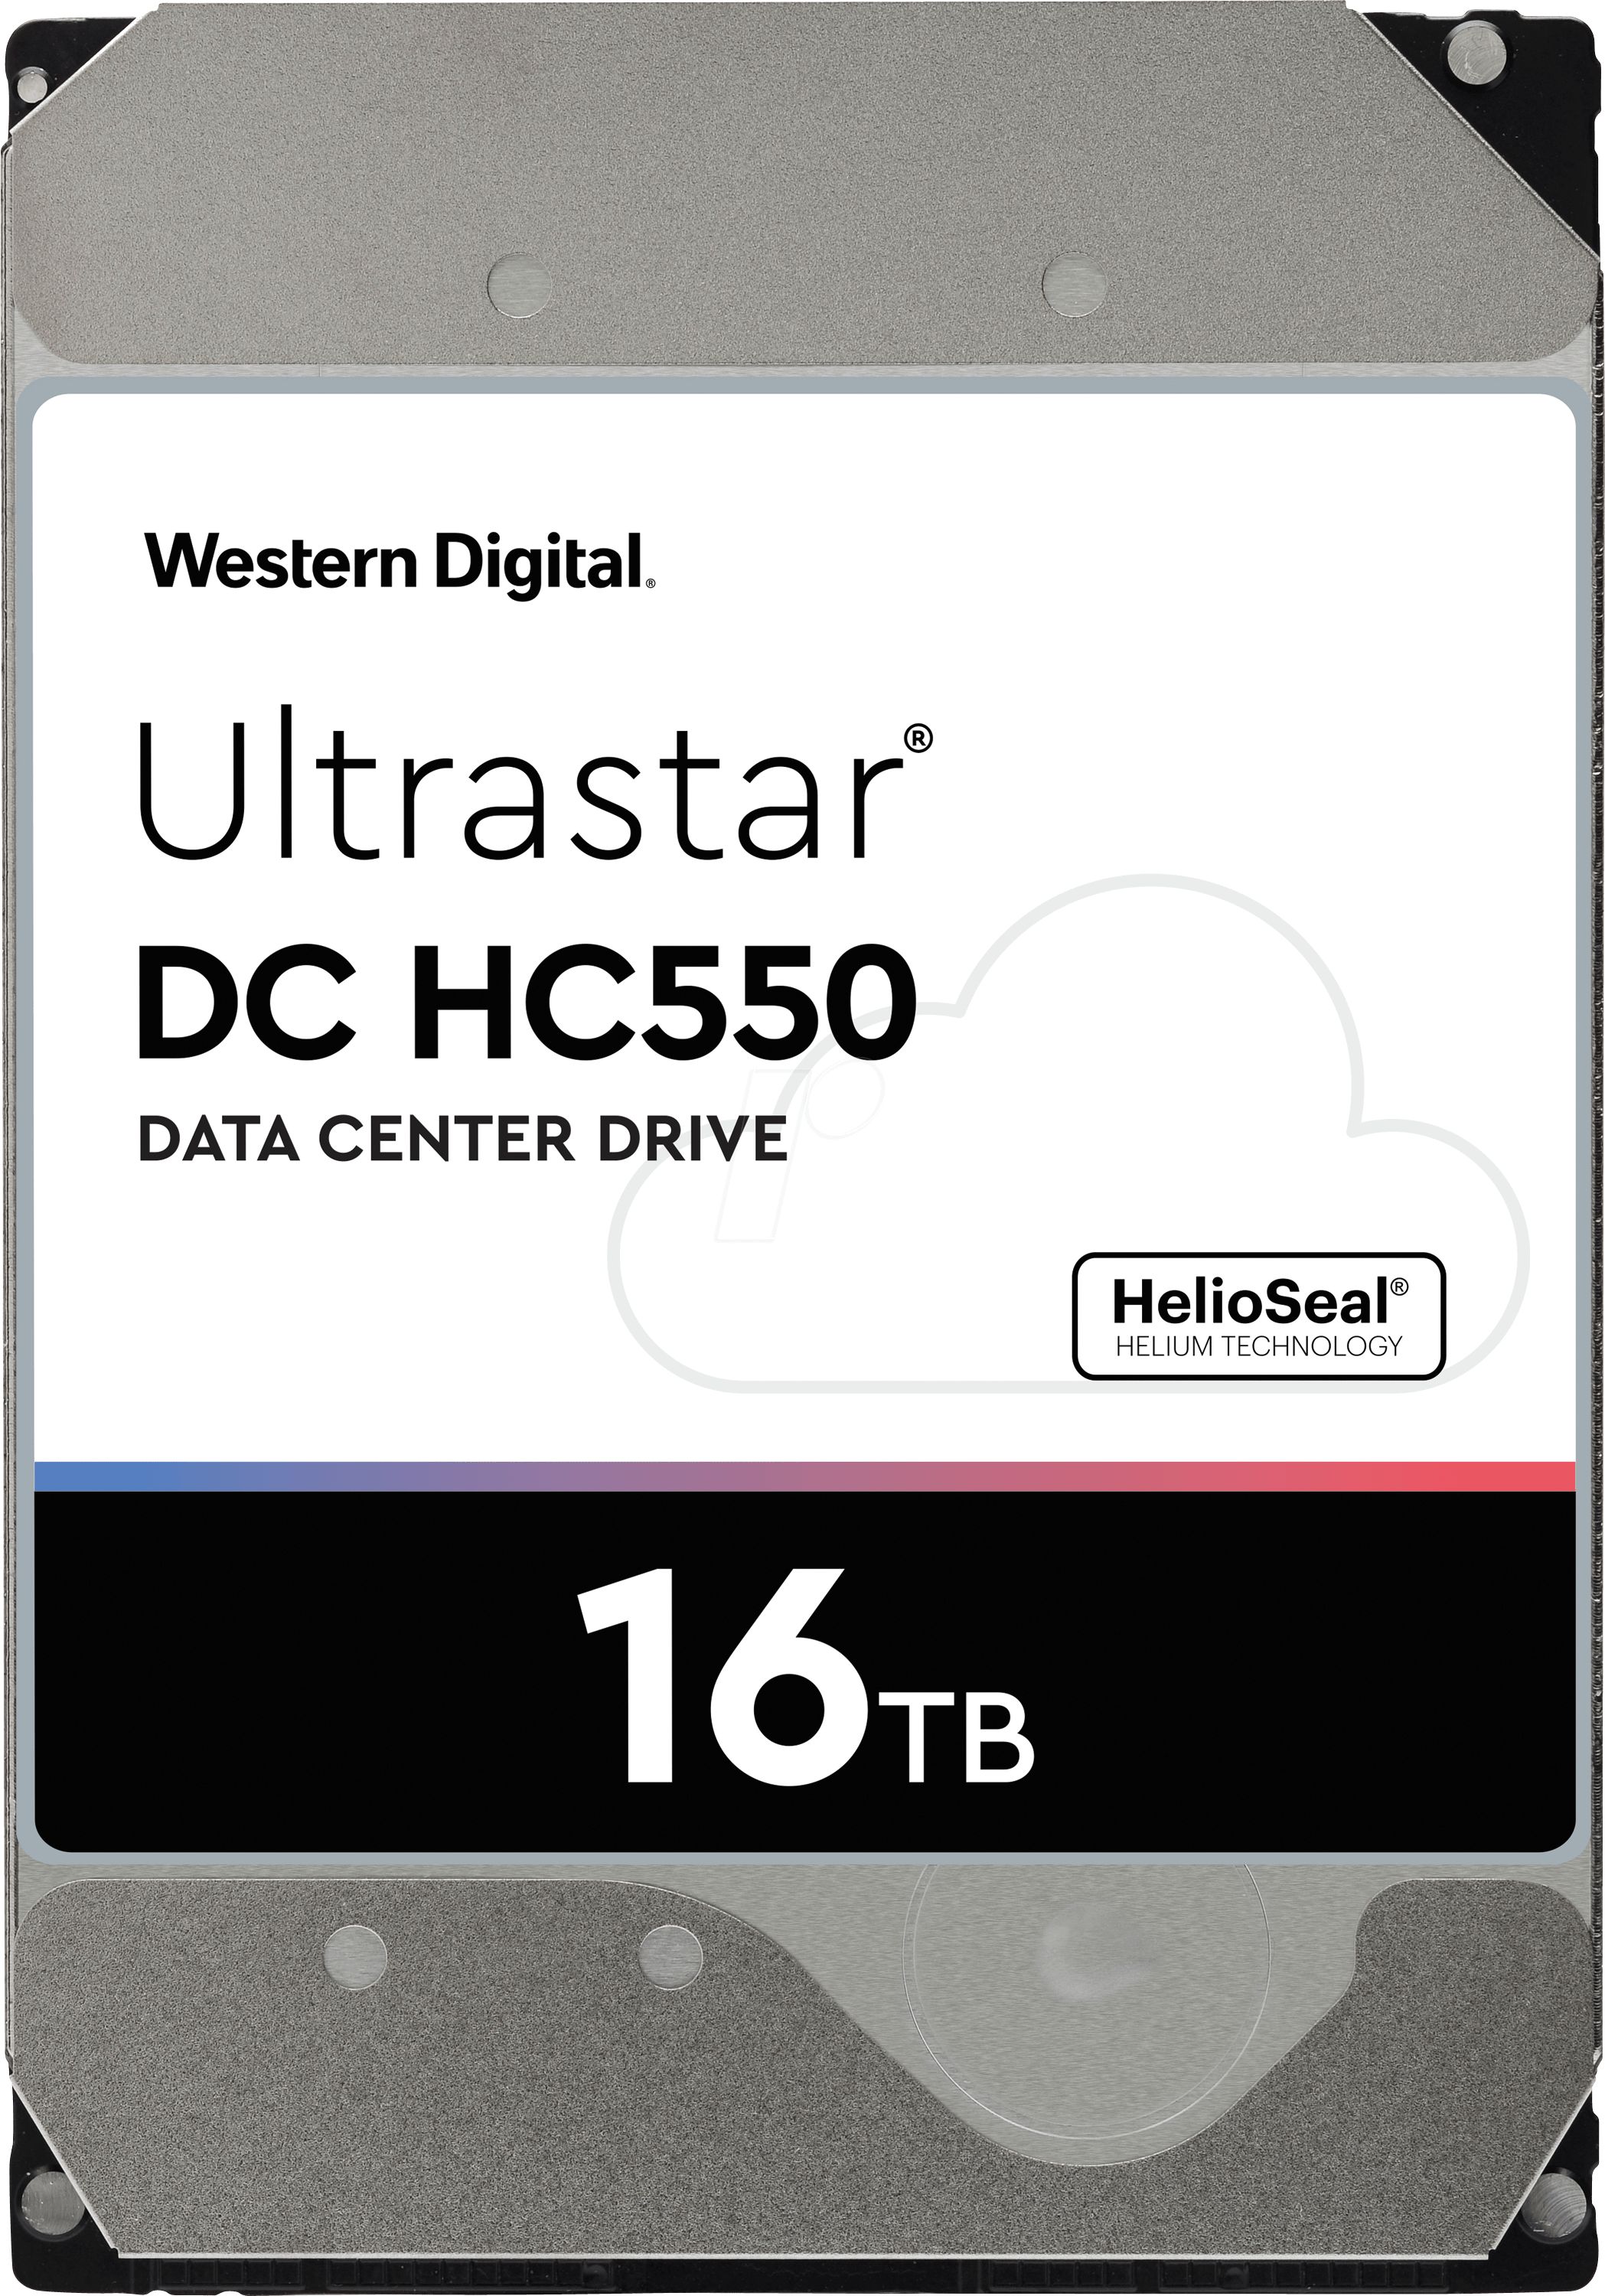 Western Digital Ultrastar 0F38462 3.5